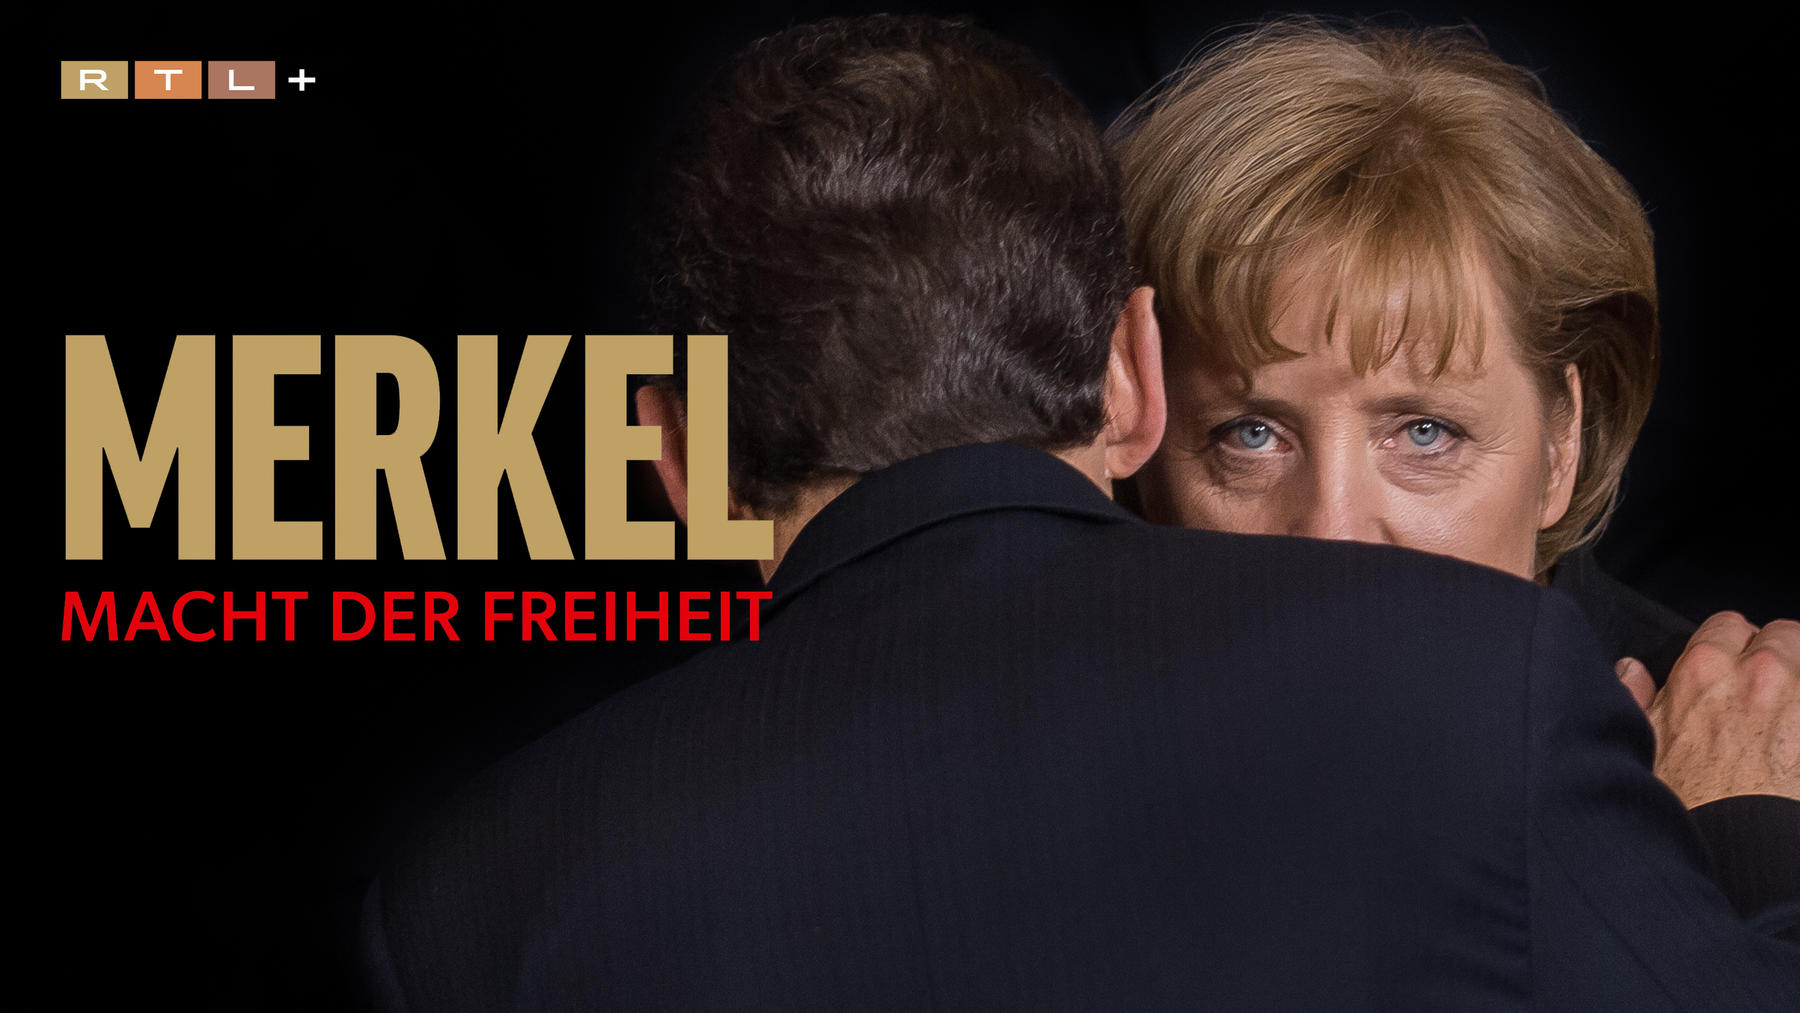 Merkel – Macht der Freiheit